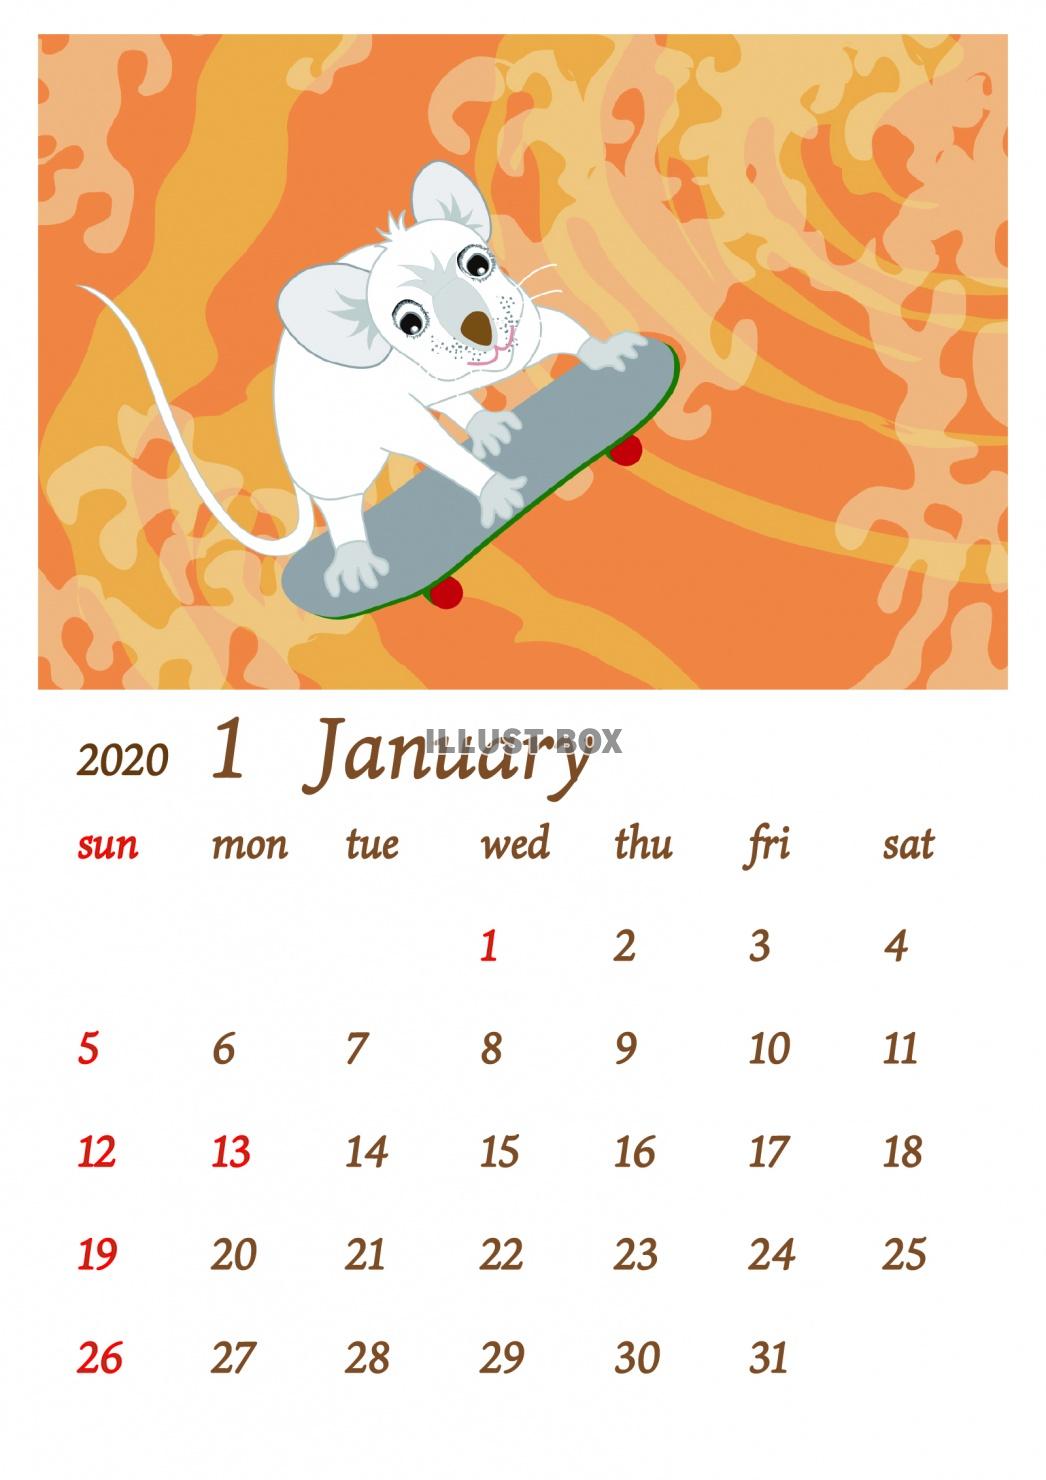 20201月のネズミとスポーツのカレンダー